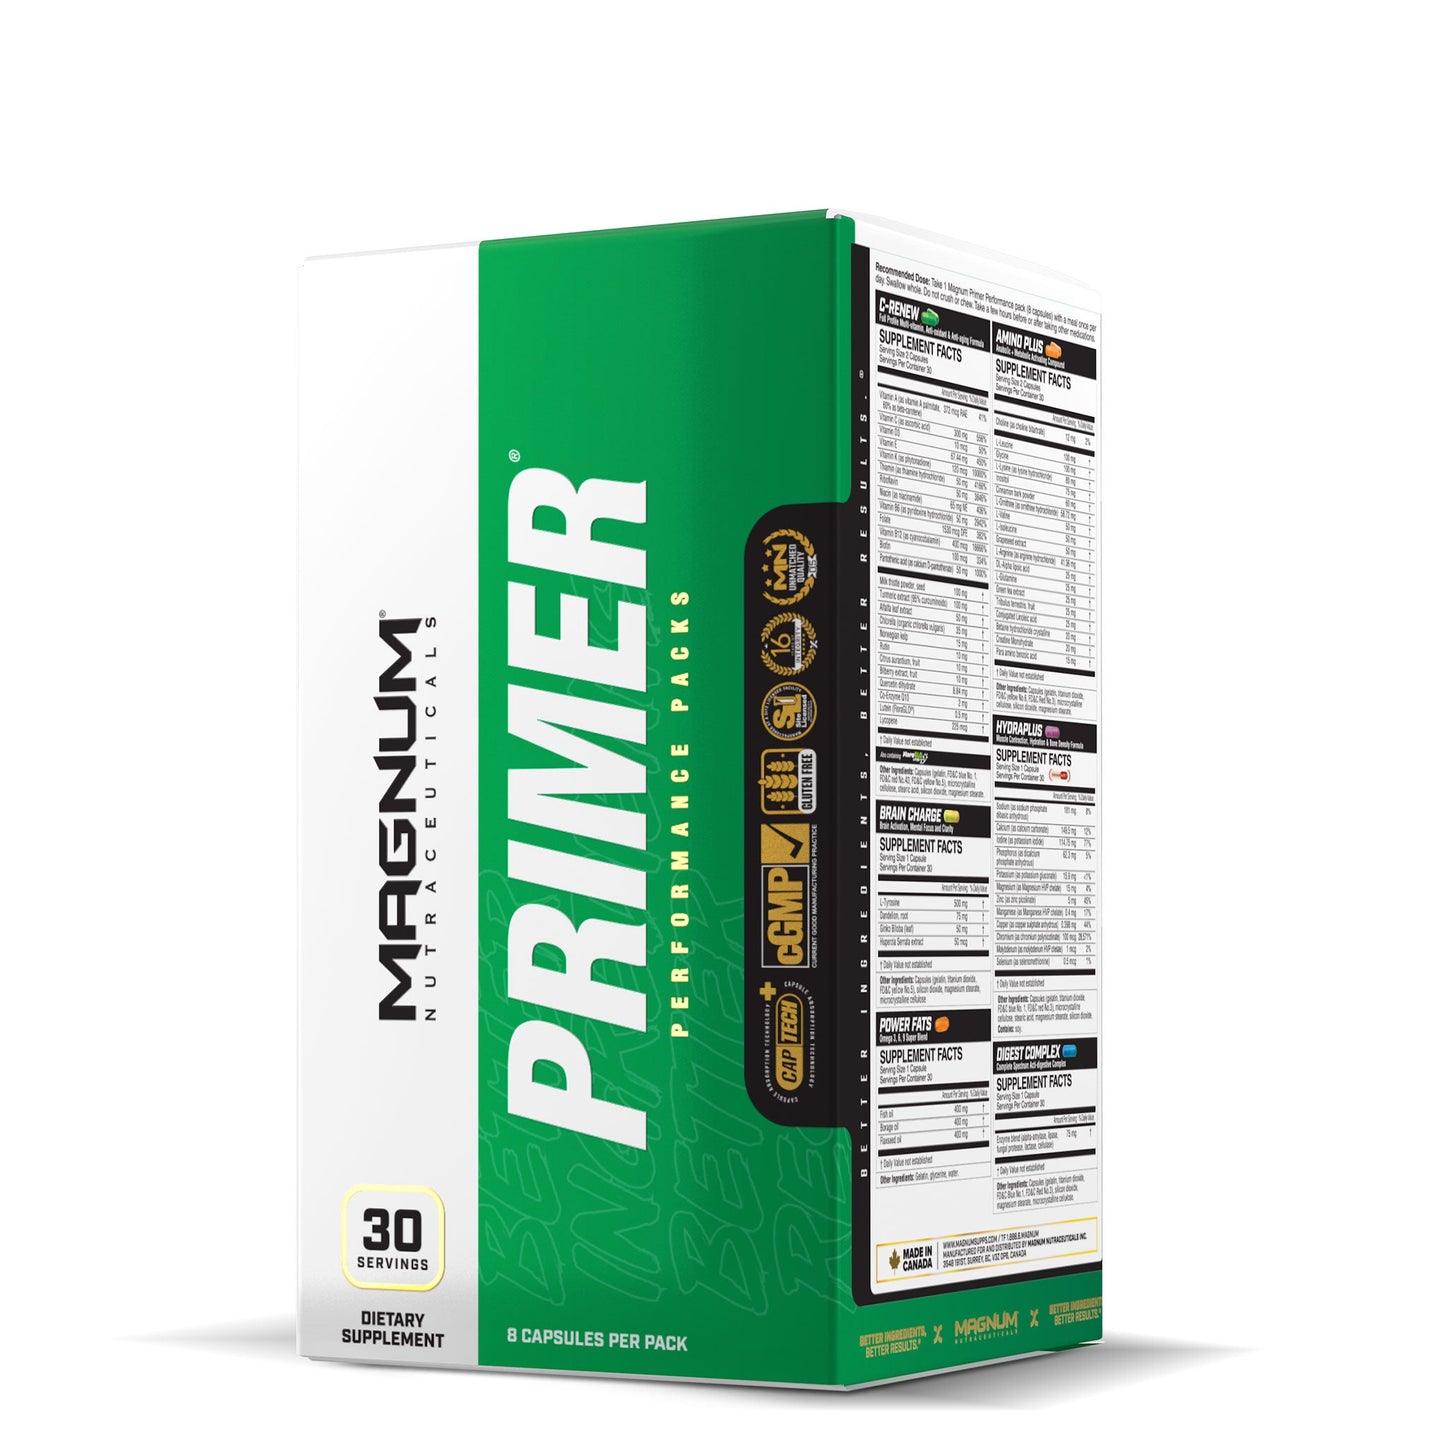 Primer, Performance Pack, 30 servings, 8 capsules per pack